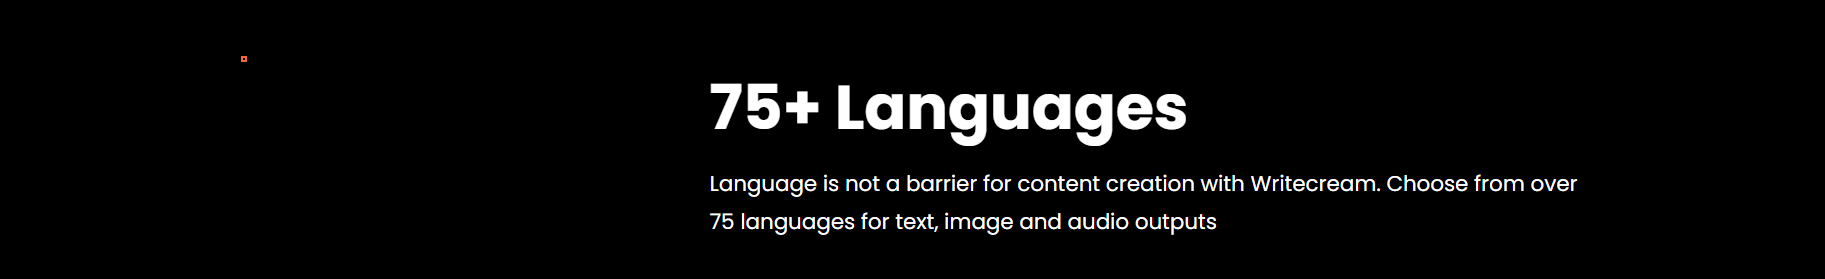 75-languages